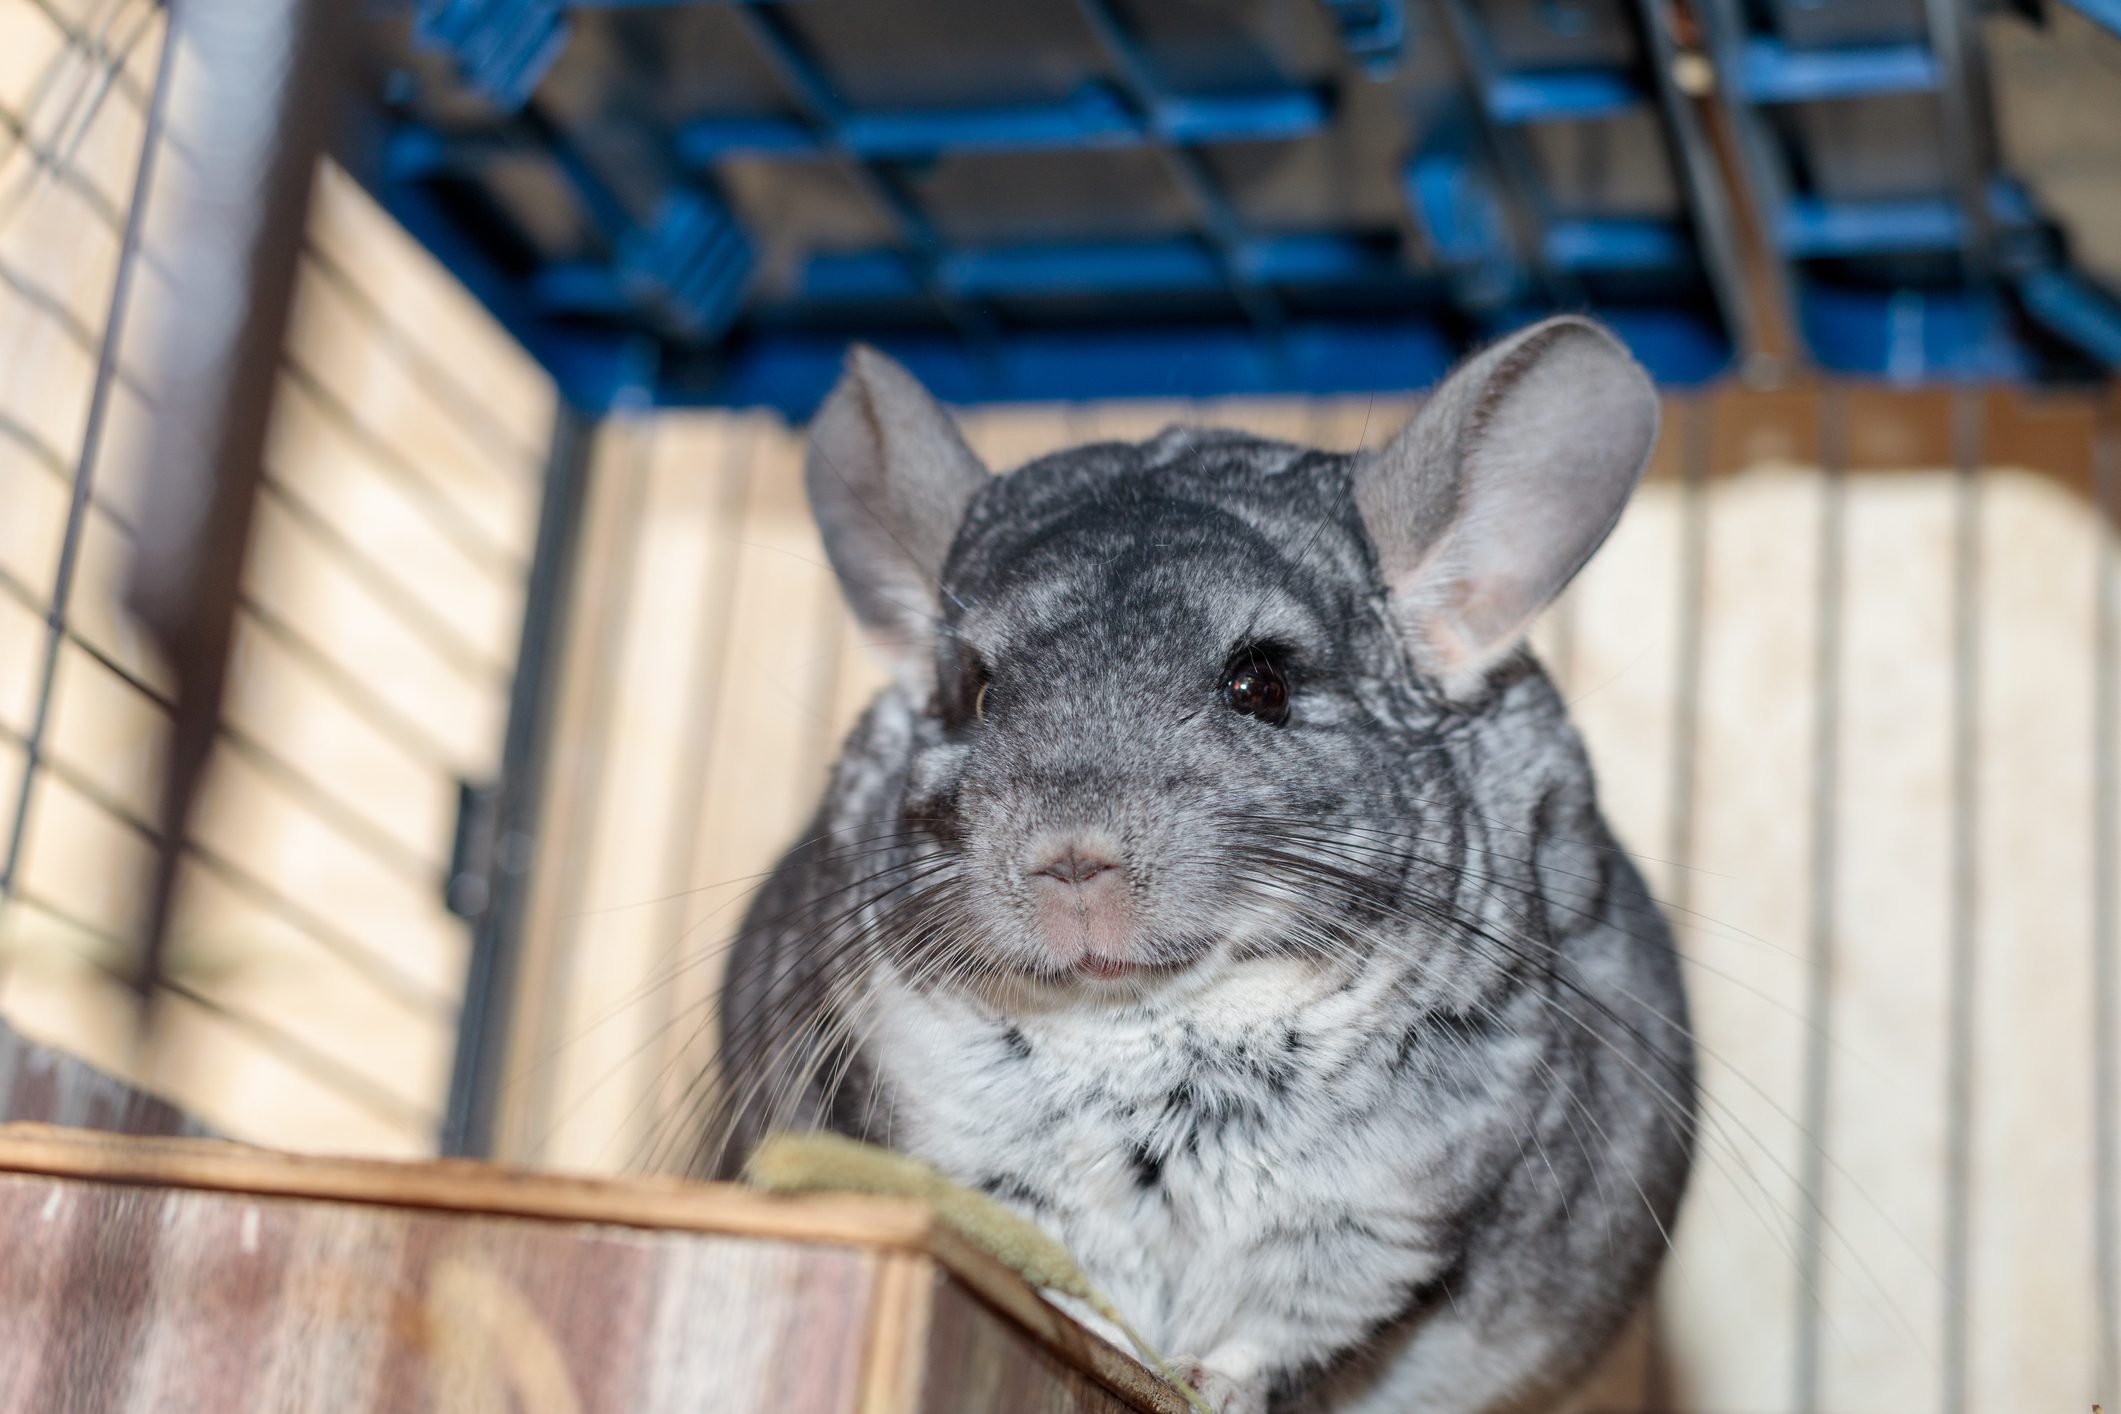 big fluffy gray chinchilla close up portrait